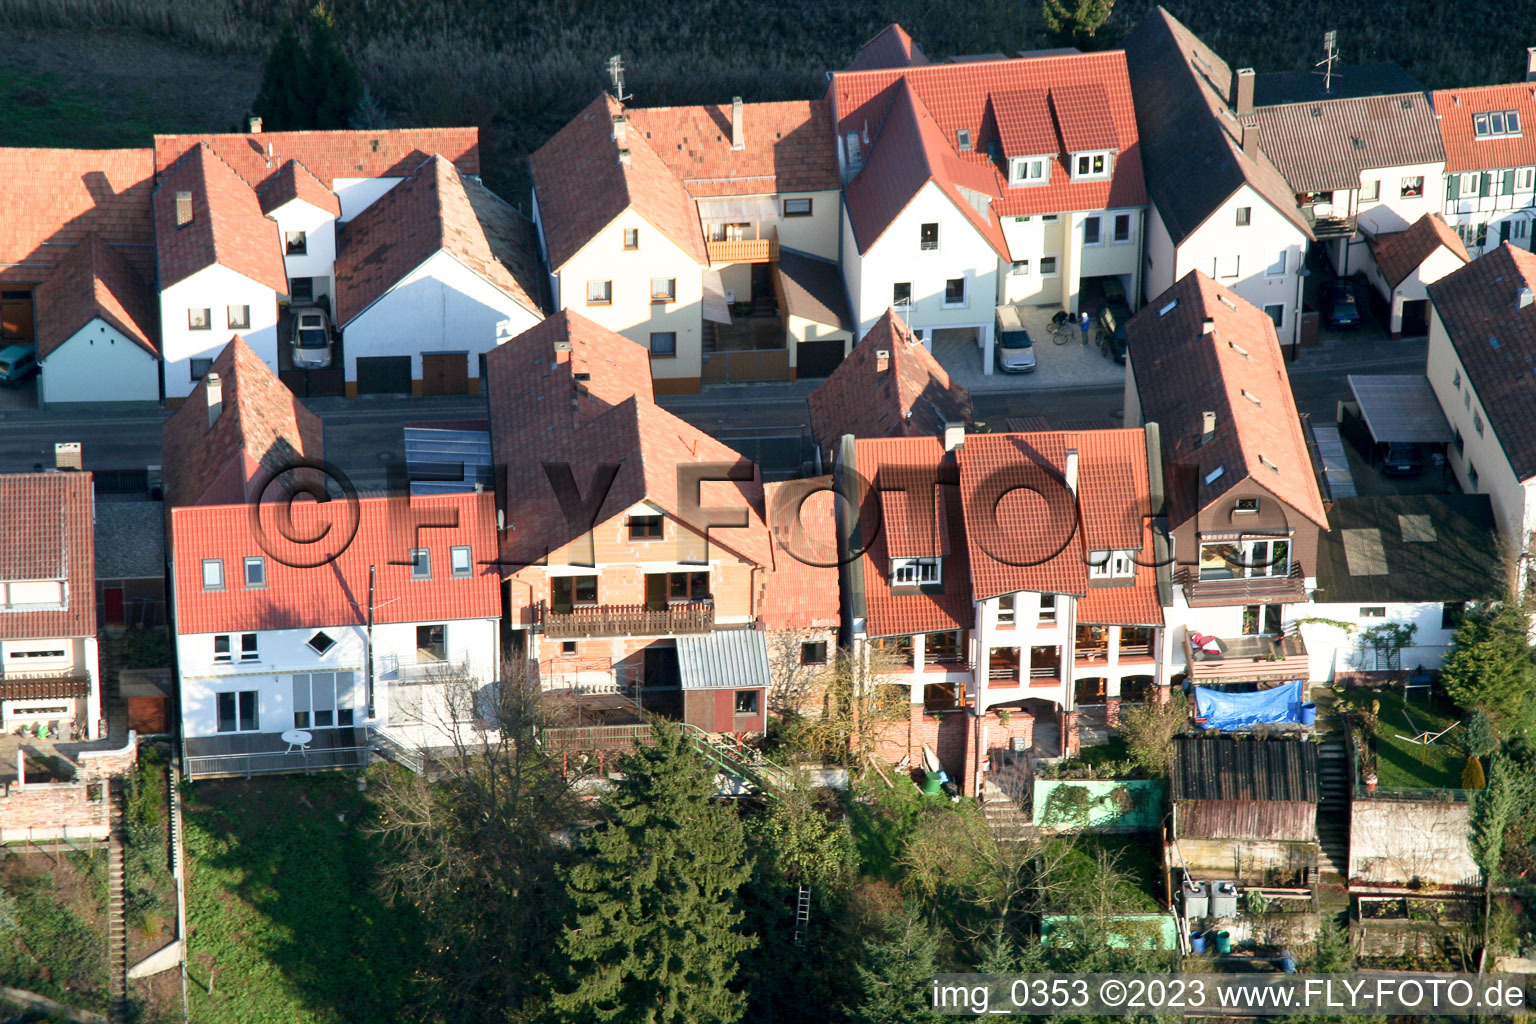 Jockgrim Ludwigstr im Bundesland Rheinland-Pfalz, Deutschland von oben gesehen